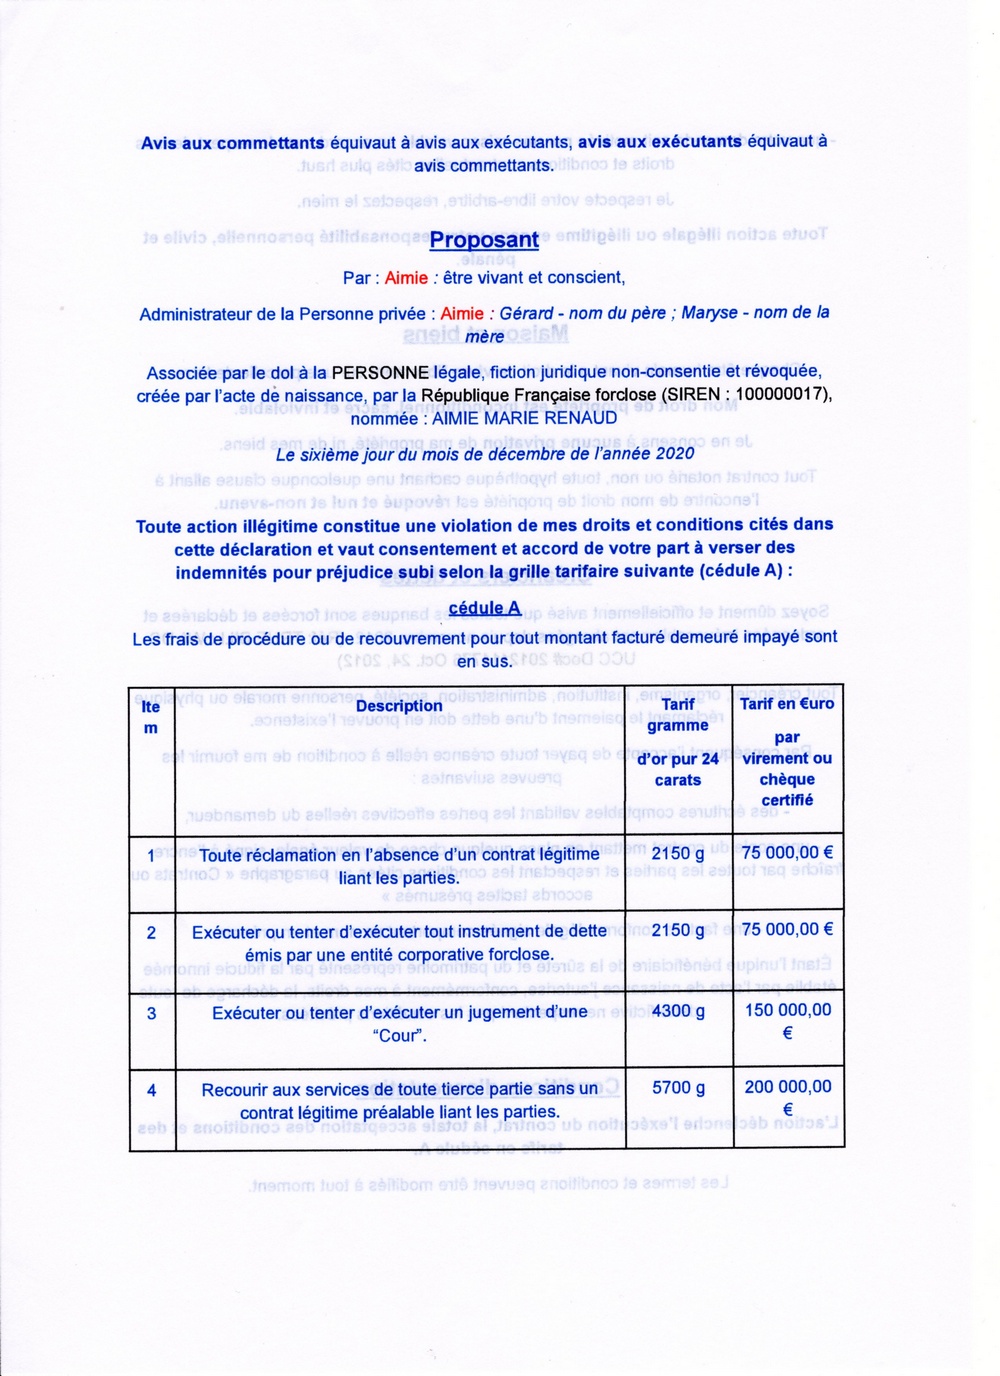 Aimie Renaud 4 proclamation des droits et termes contractuels004